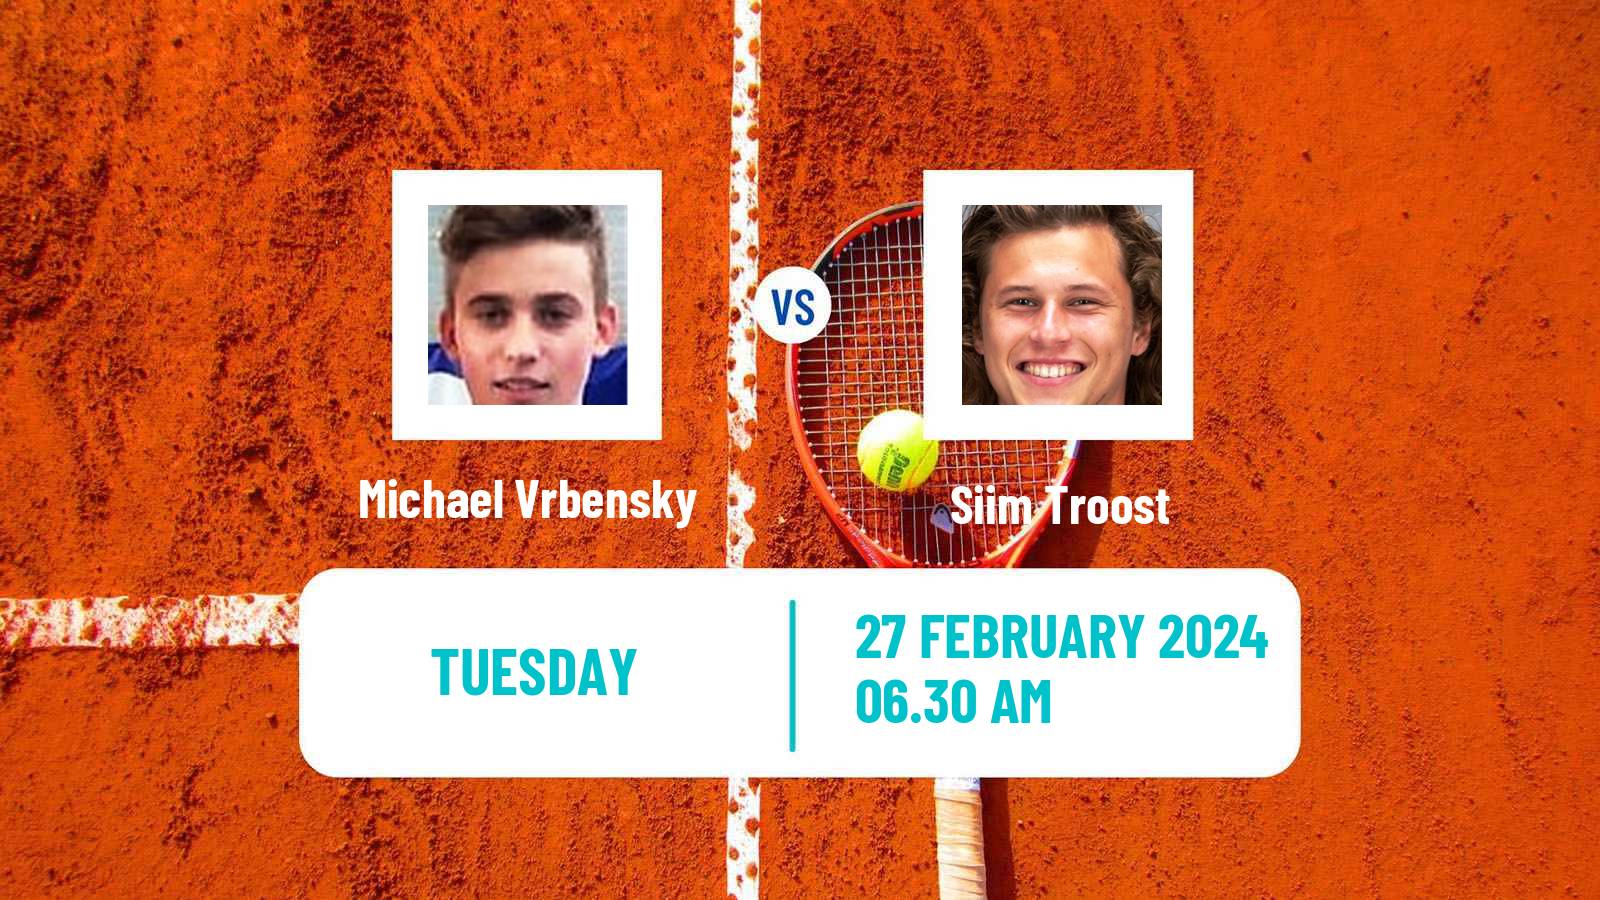 Tennis ITF M25 Faro Men Michael Vrbensky - Siim Troost